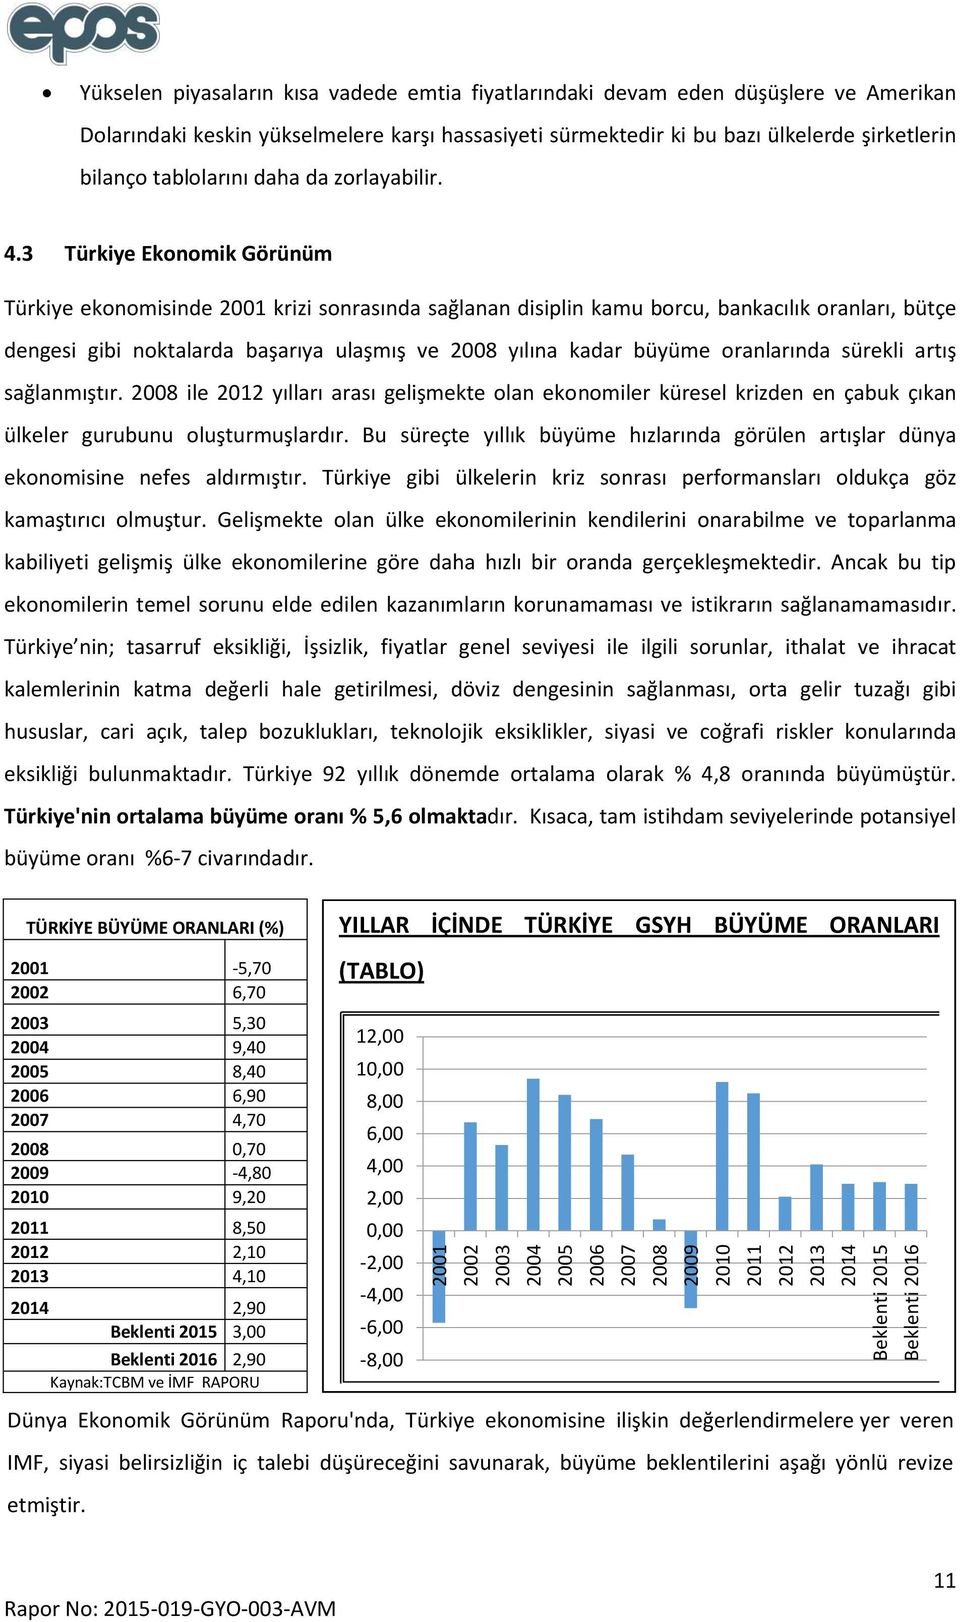 3 Türkiye Ekonomik Görünüm Türkiye ekonomisinde 2001 krizi sonrasında sağlanan disiplin kamu borcu, bankacılık oranları, bütçe dengesi gibi noktalarda başarıya ulaşmış ve 2008 yılına kadar büyüme